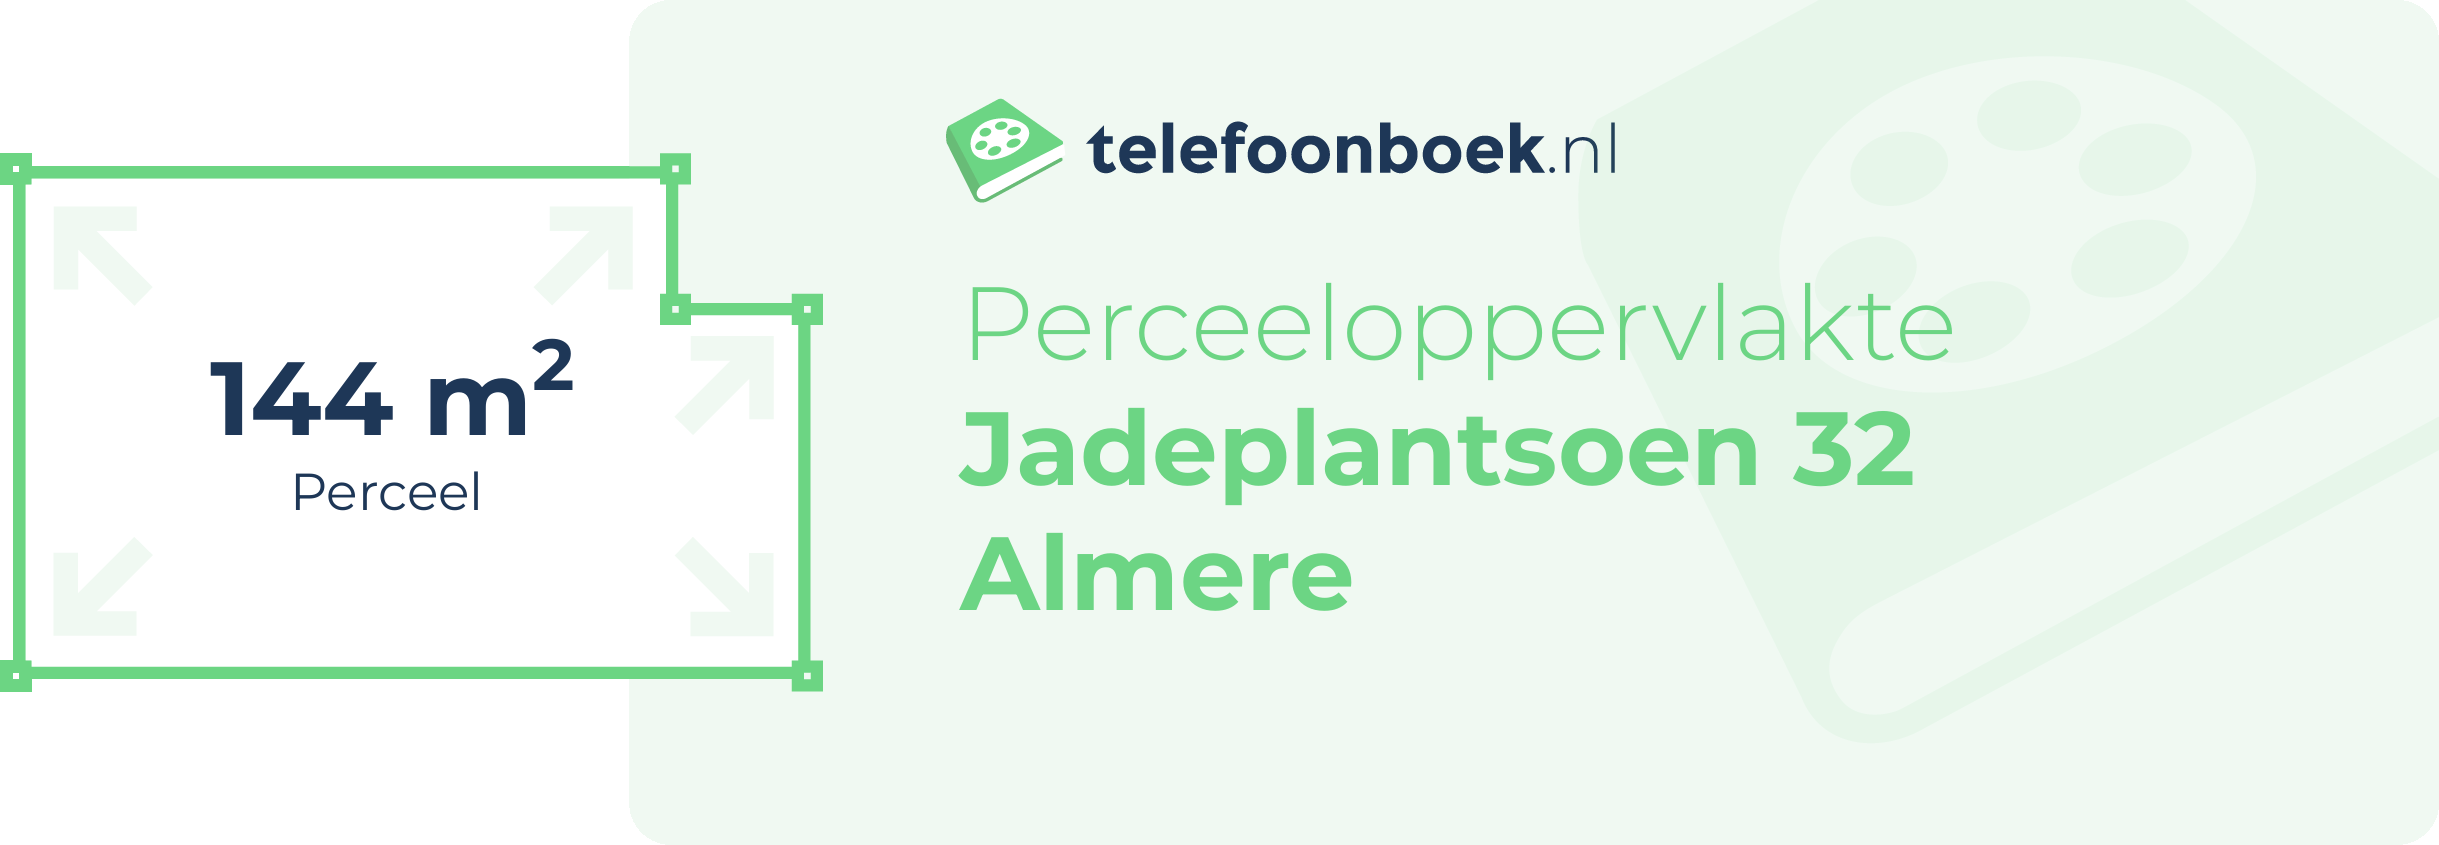 Perceeloppervlakte Jadeplantsoen 32 Almere